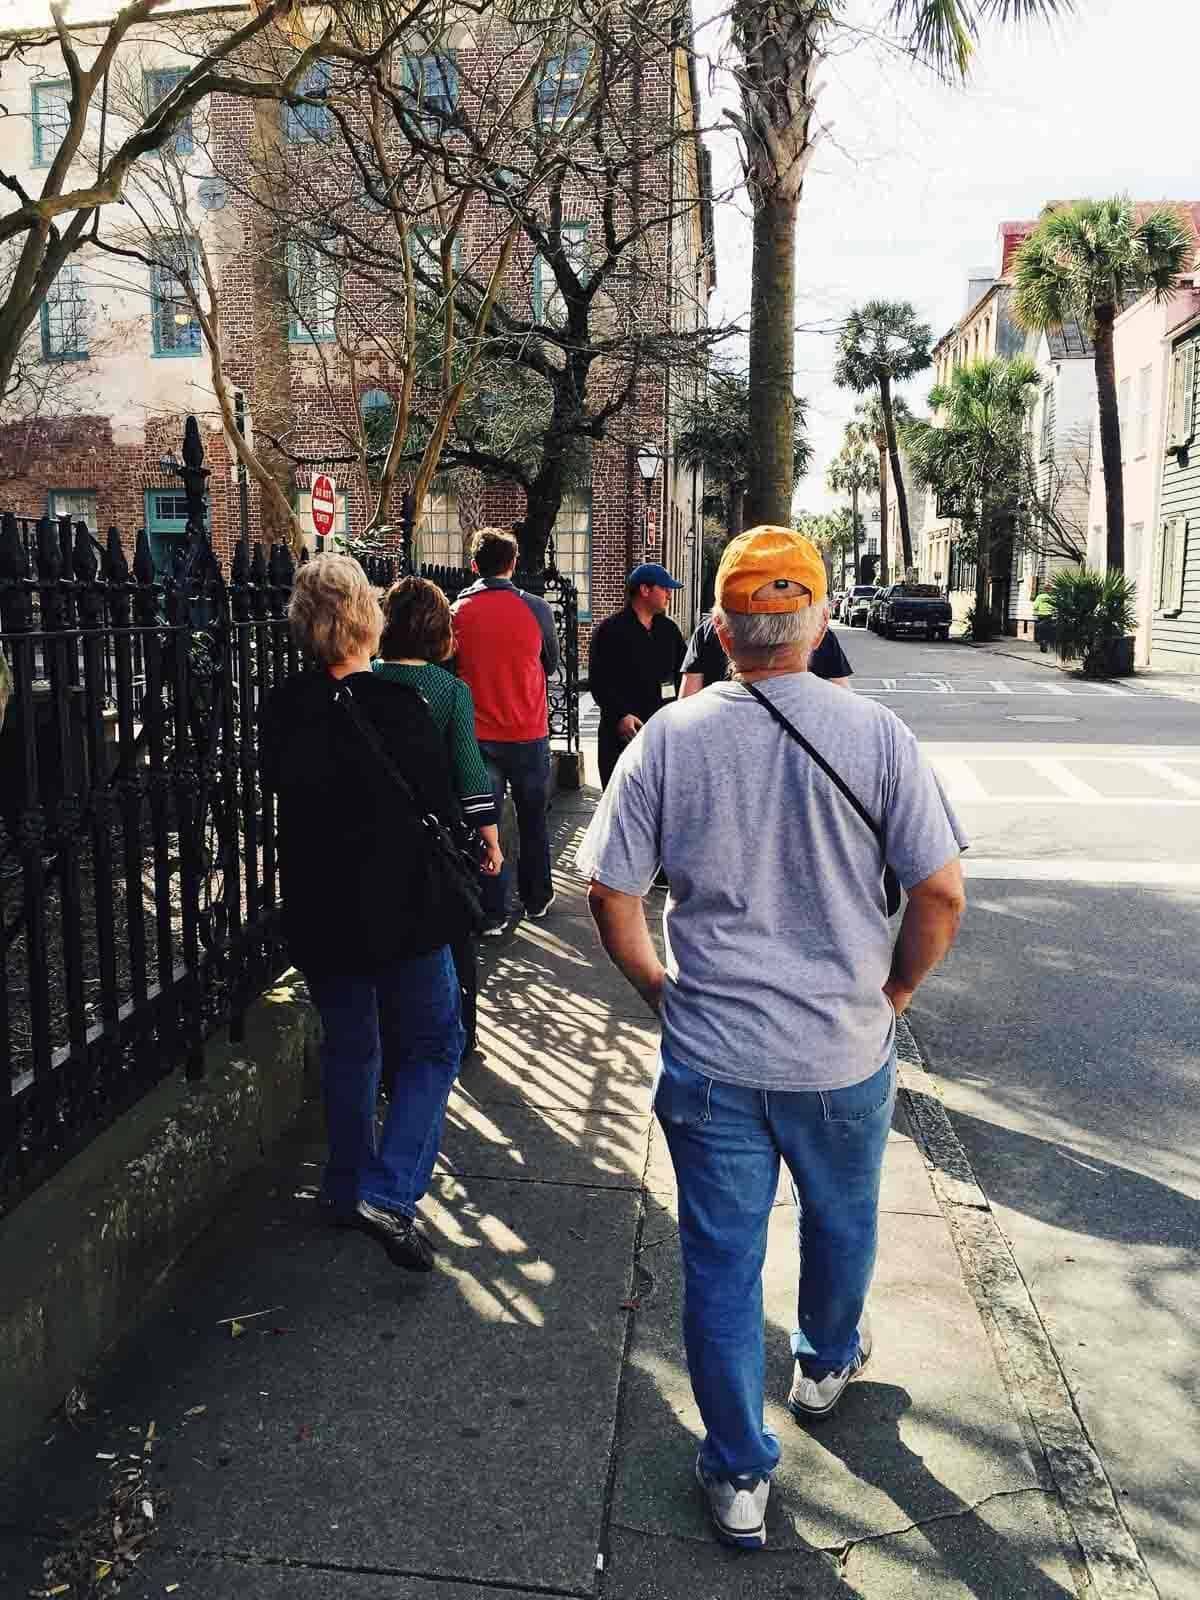 People walking on a sidewalk.